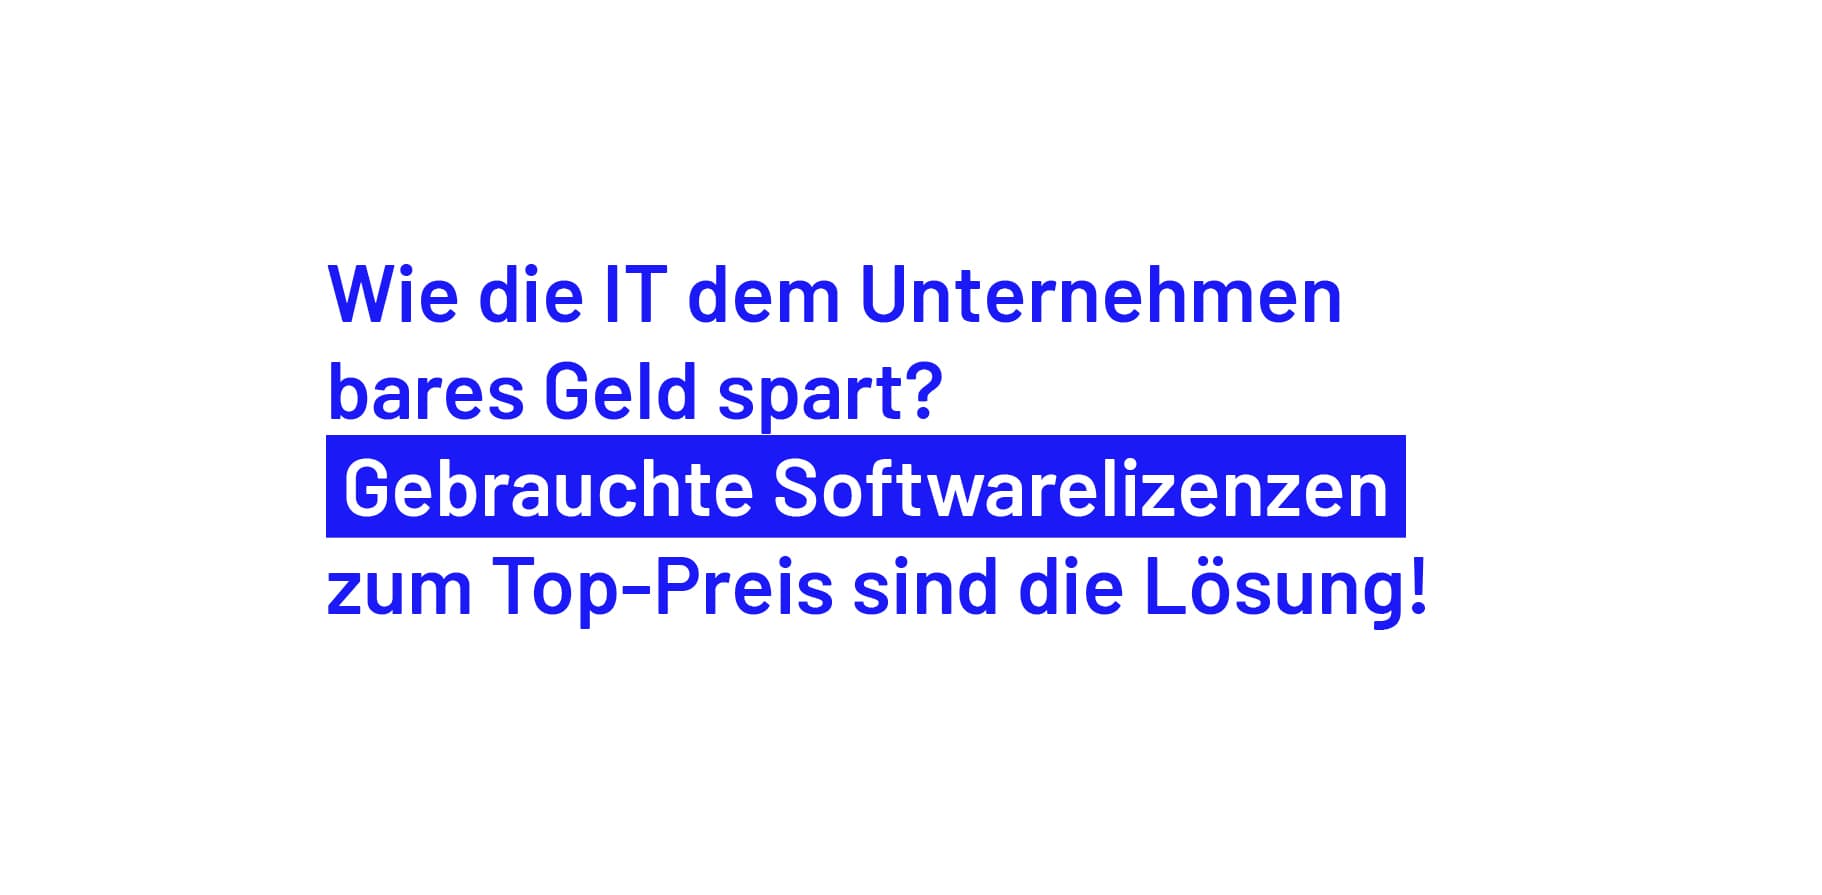 Blauer Text auf weißem Hintergrund: Wie die IT dem Unternehmen bares Geld spart? Gebrauchte Softwarelizenzen zum Top-Preis sind die Lösung!